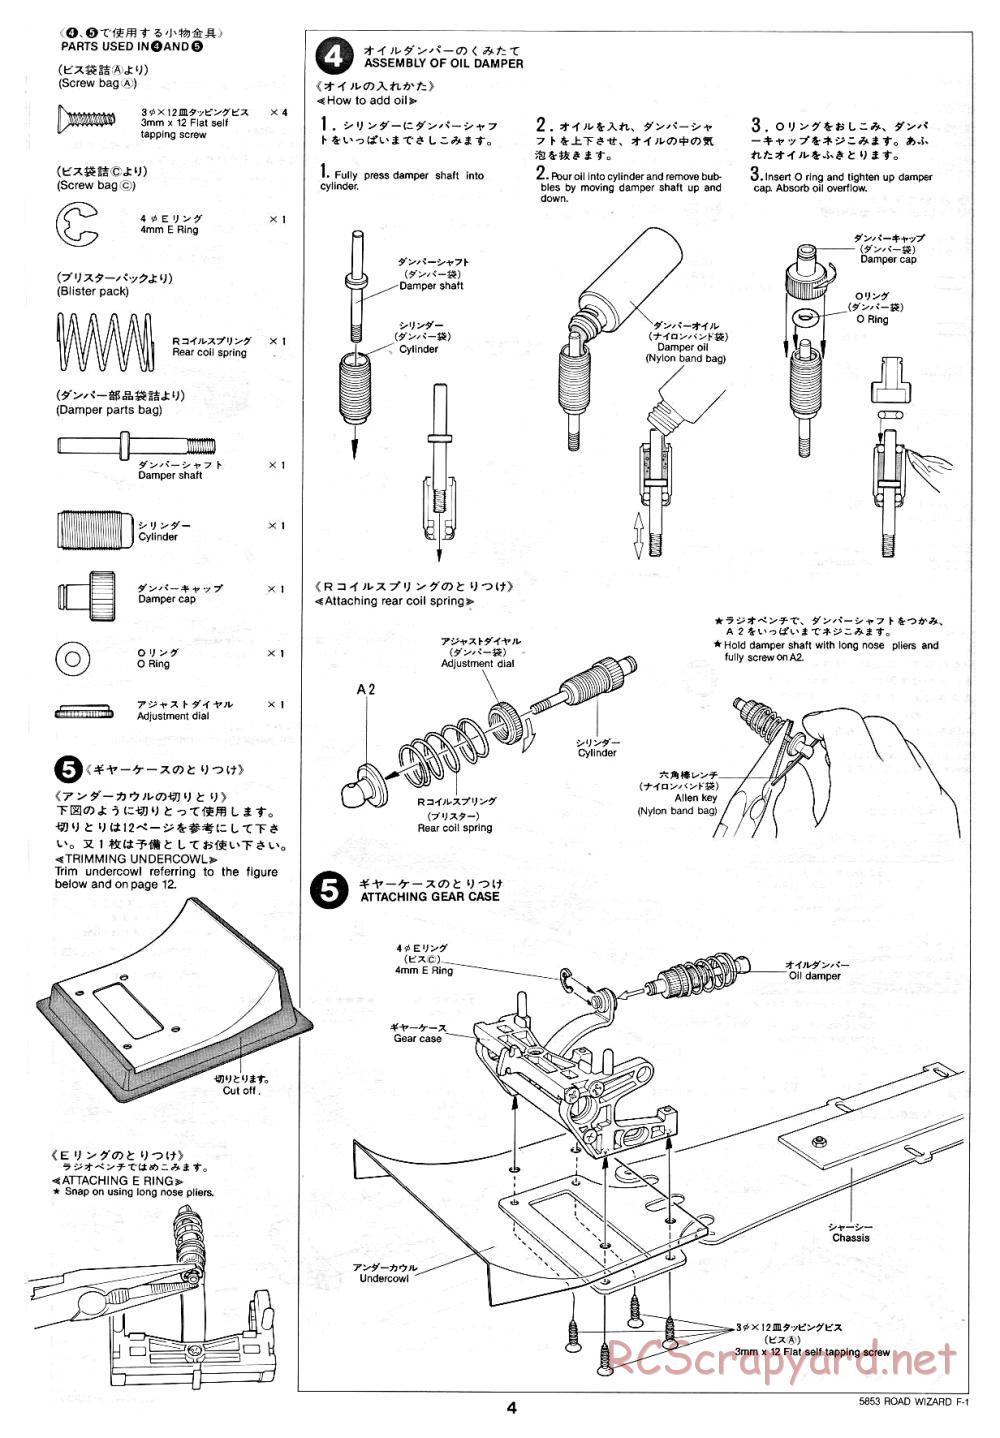 Tamiya - Road Wizard F-1 - 58053 - Manual - Page 4